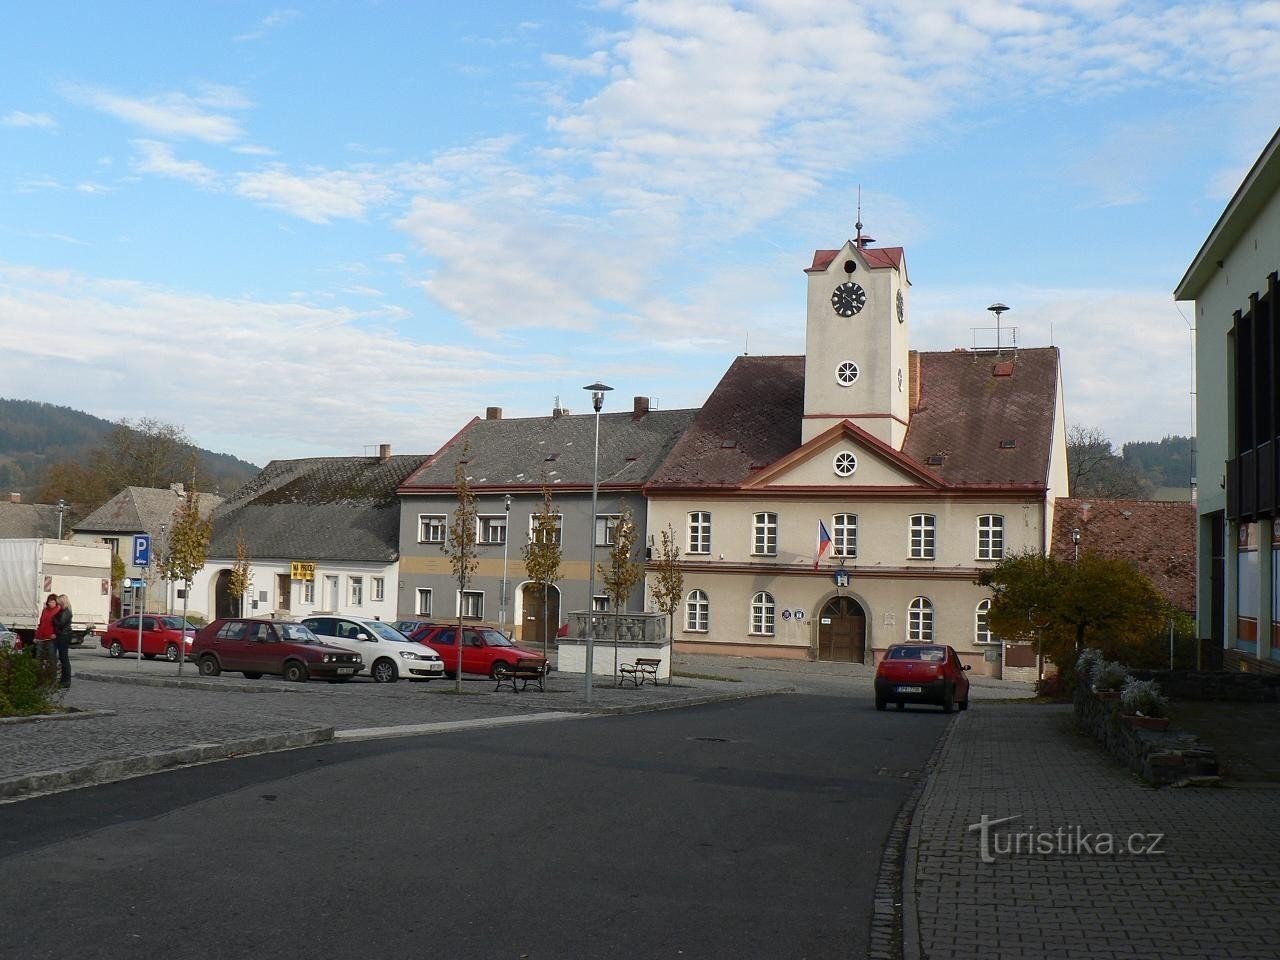 Strážov, town hall